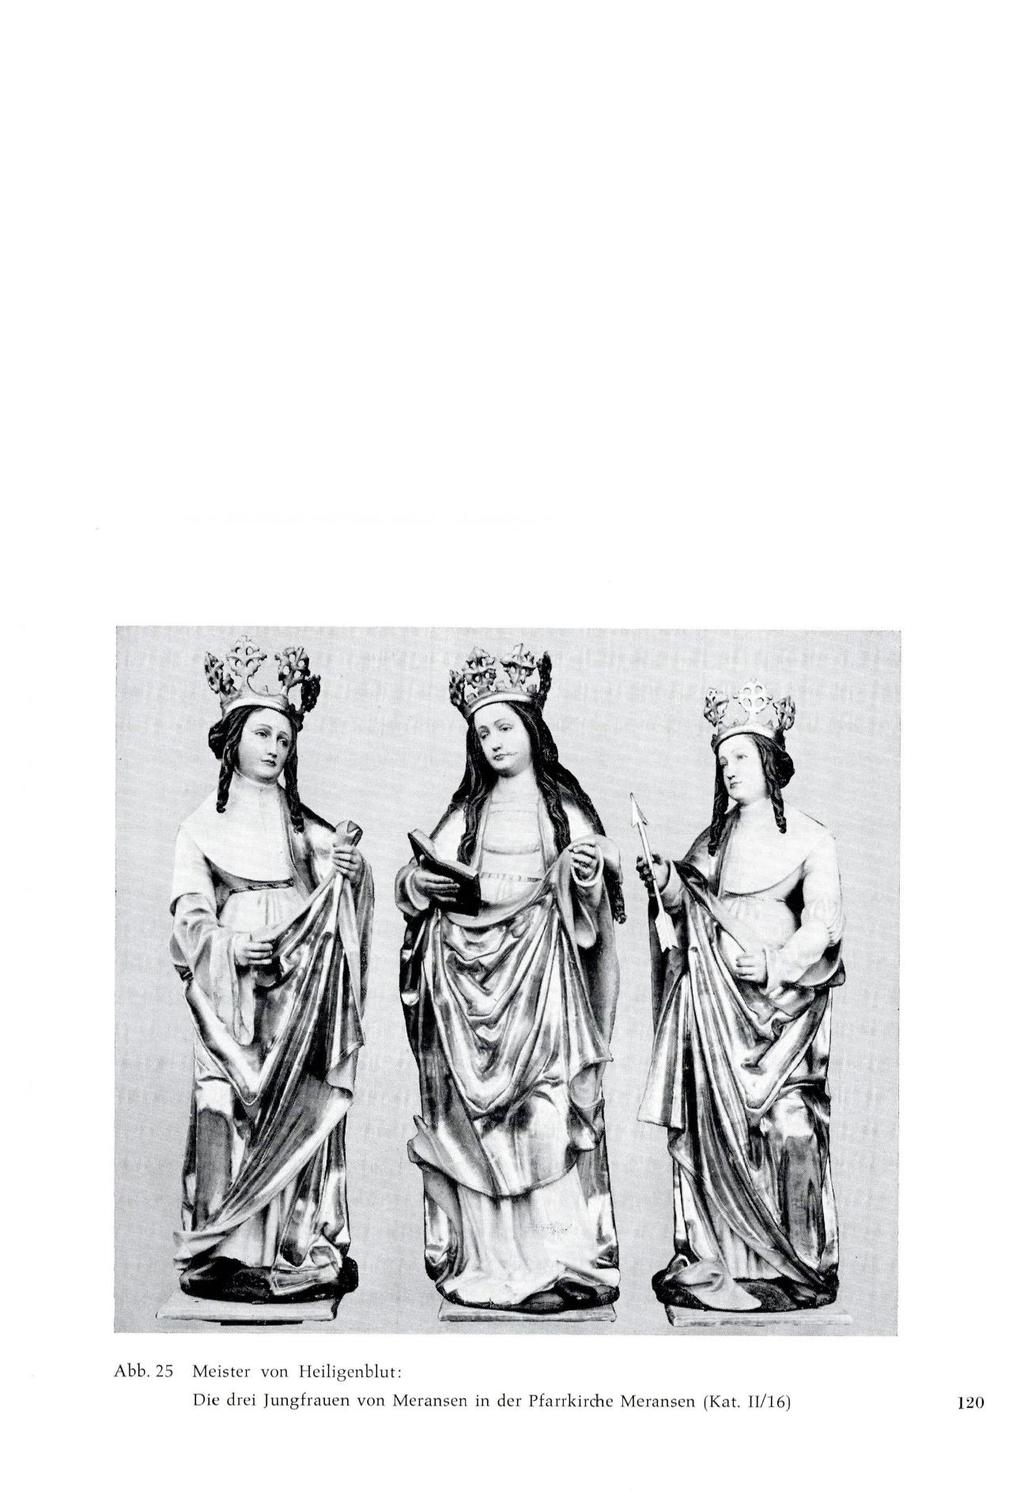 Abb. 25 Meister von Heiligenblut: Die drei Jungfrauen